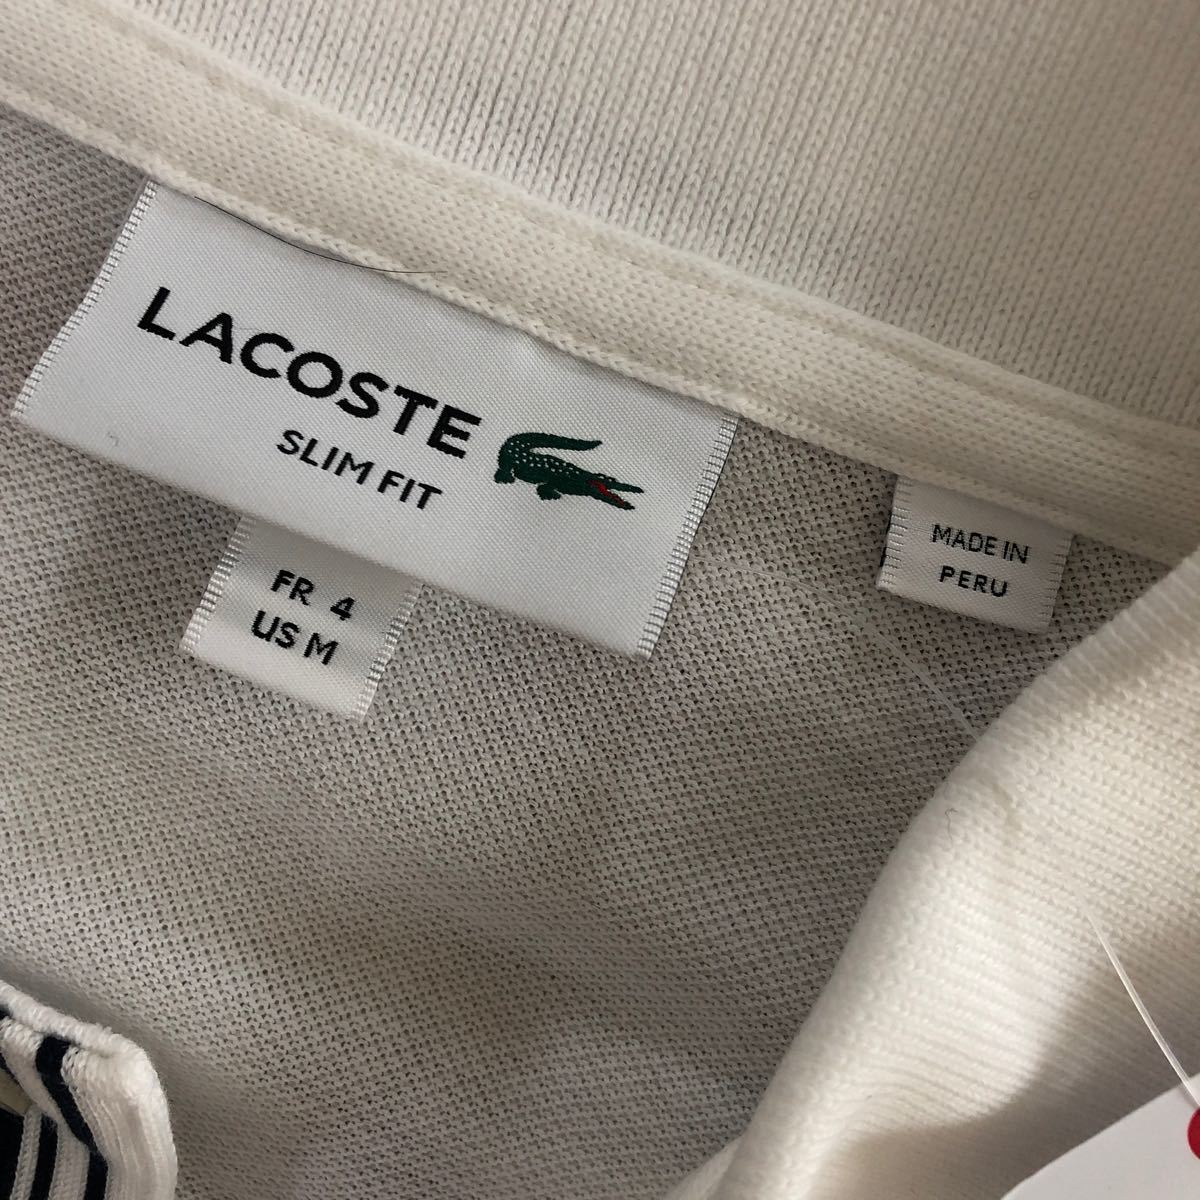 【新品未使用】LACOSTE ラコステ SLIM FIT メンズポロシャツ 白4